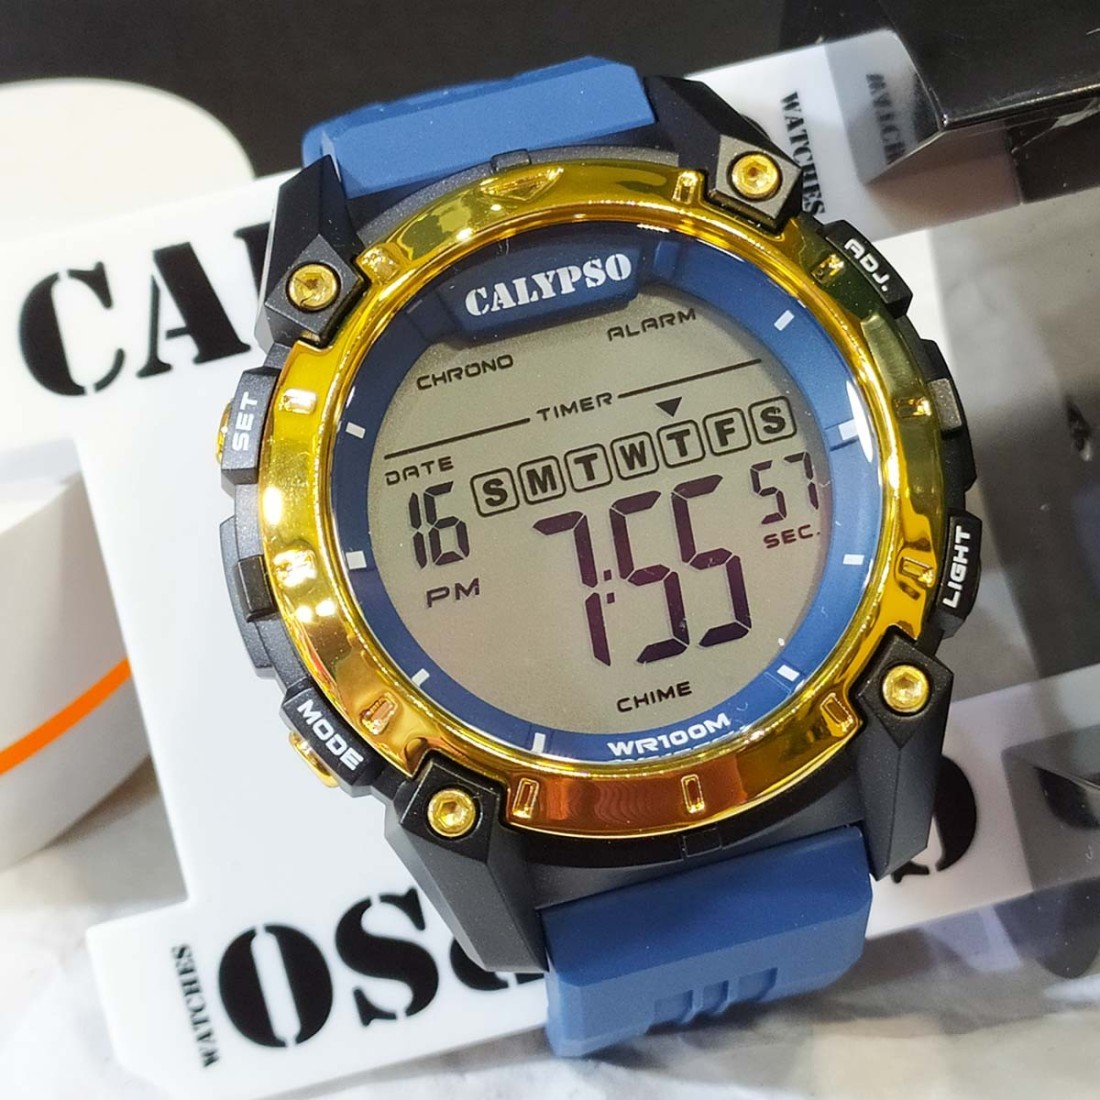  Calypso Watches Reloj de cuarzo analógico-digital para hombre  con correa de plástico K5771/4, Correa : Ropa, Zapatos y Joyería